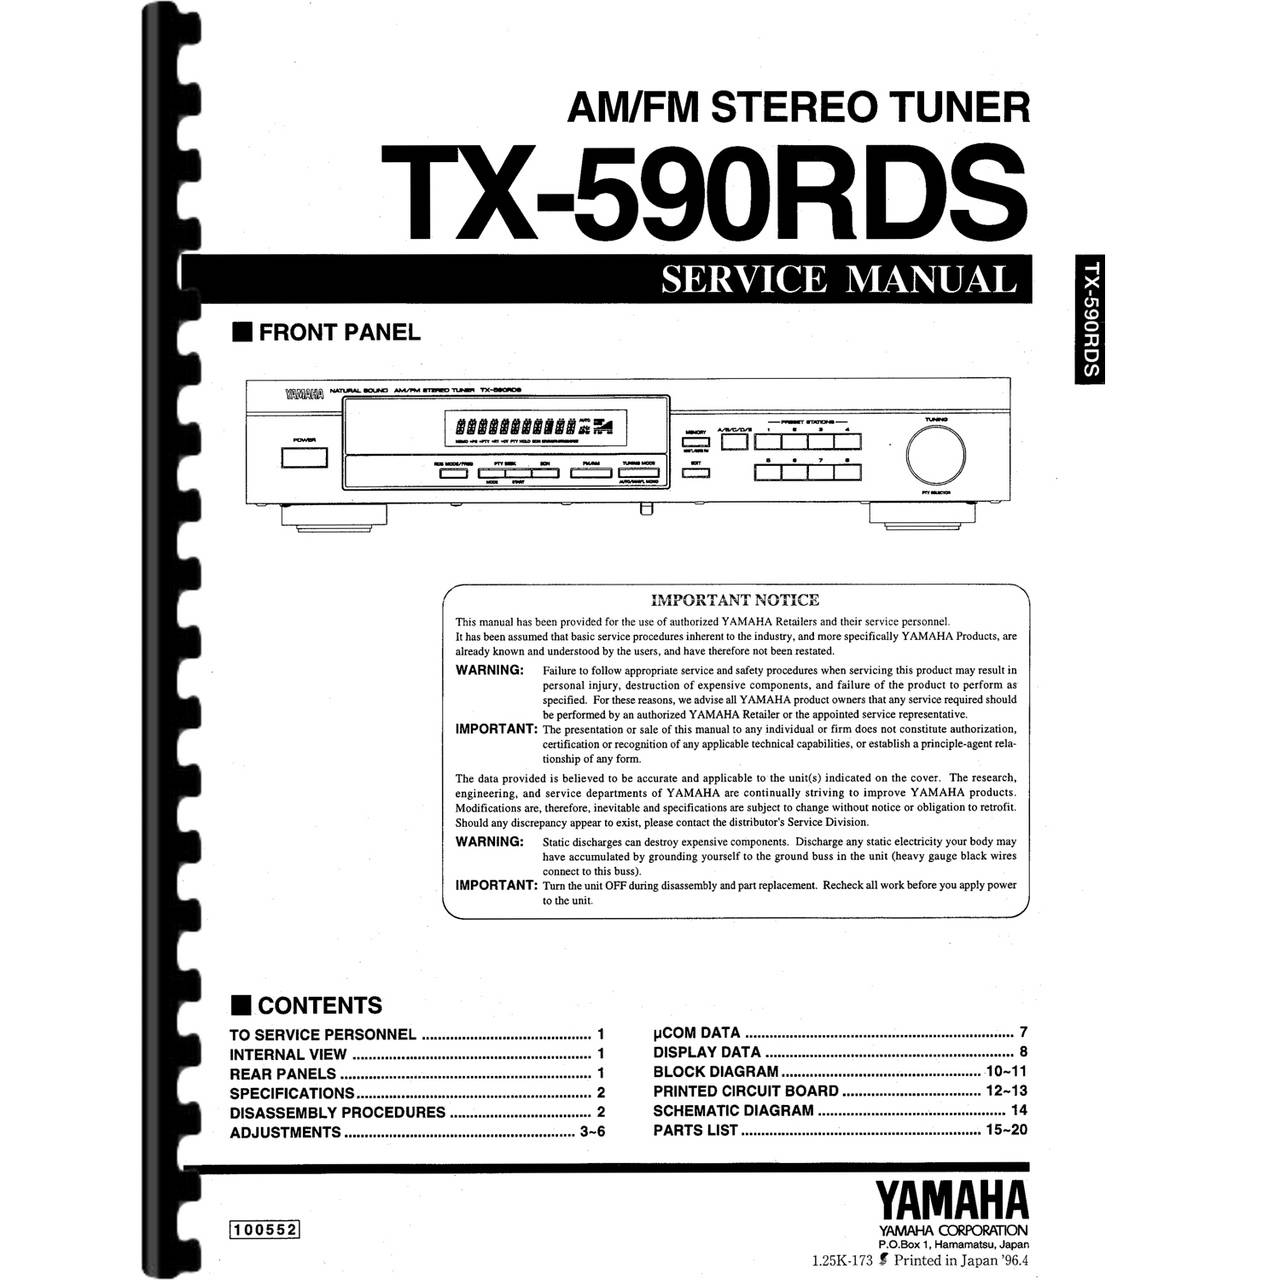 Yamaha TX-592RDS